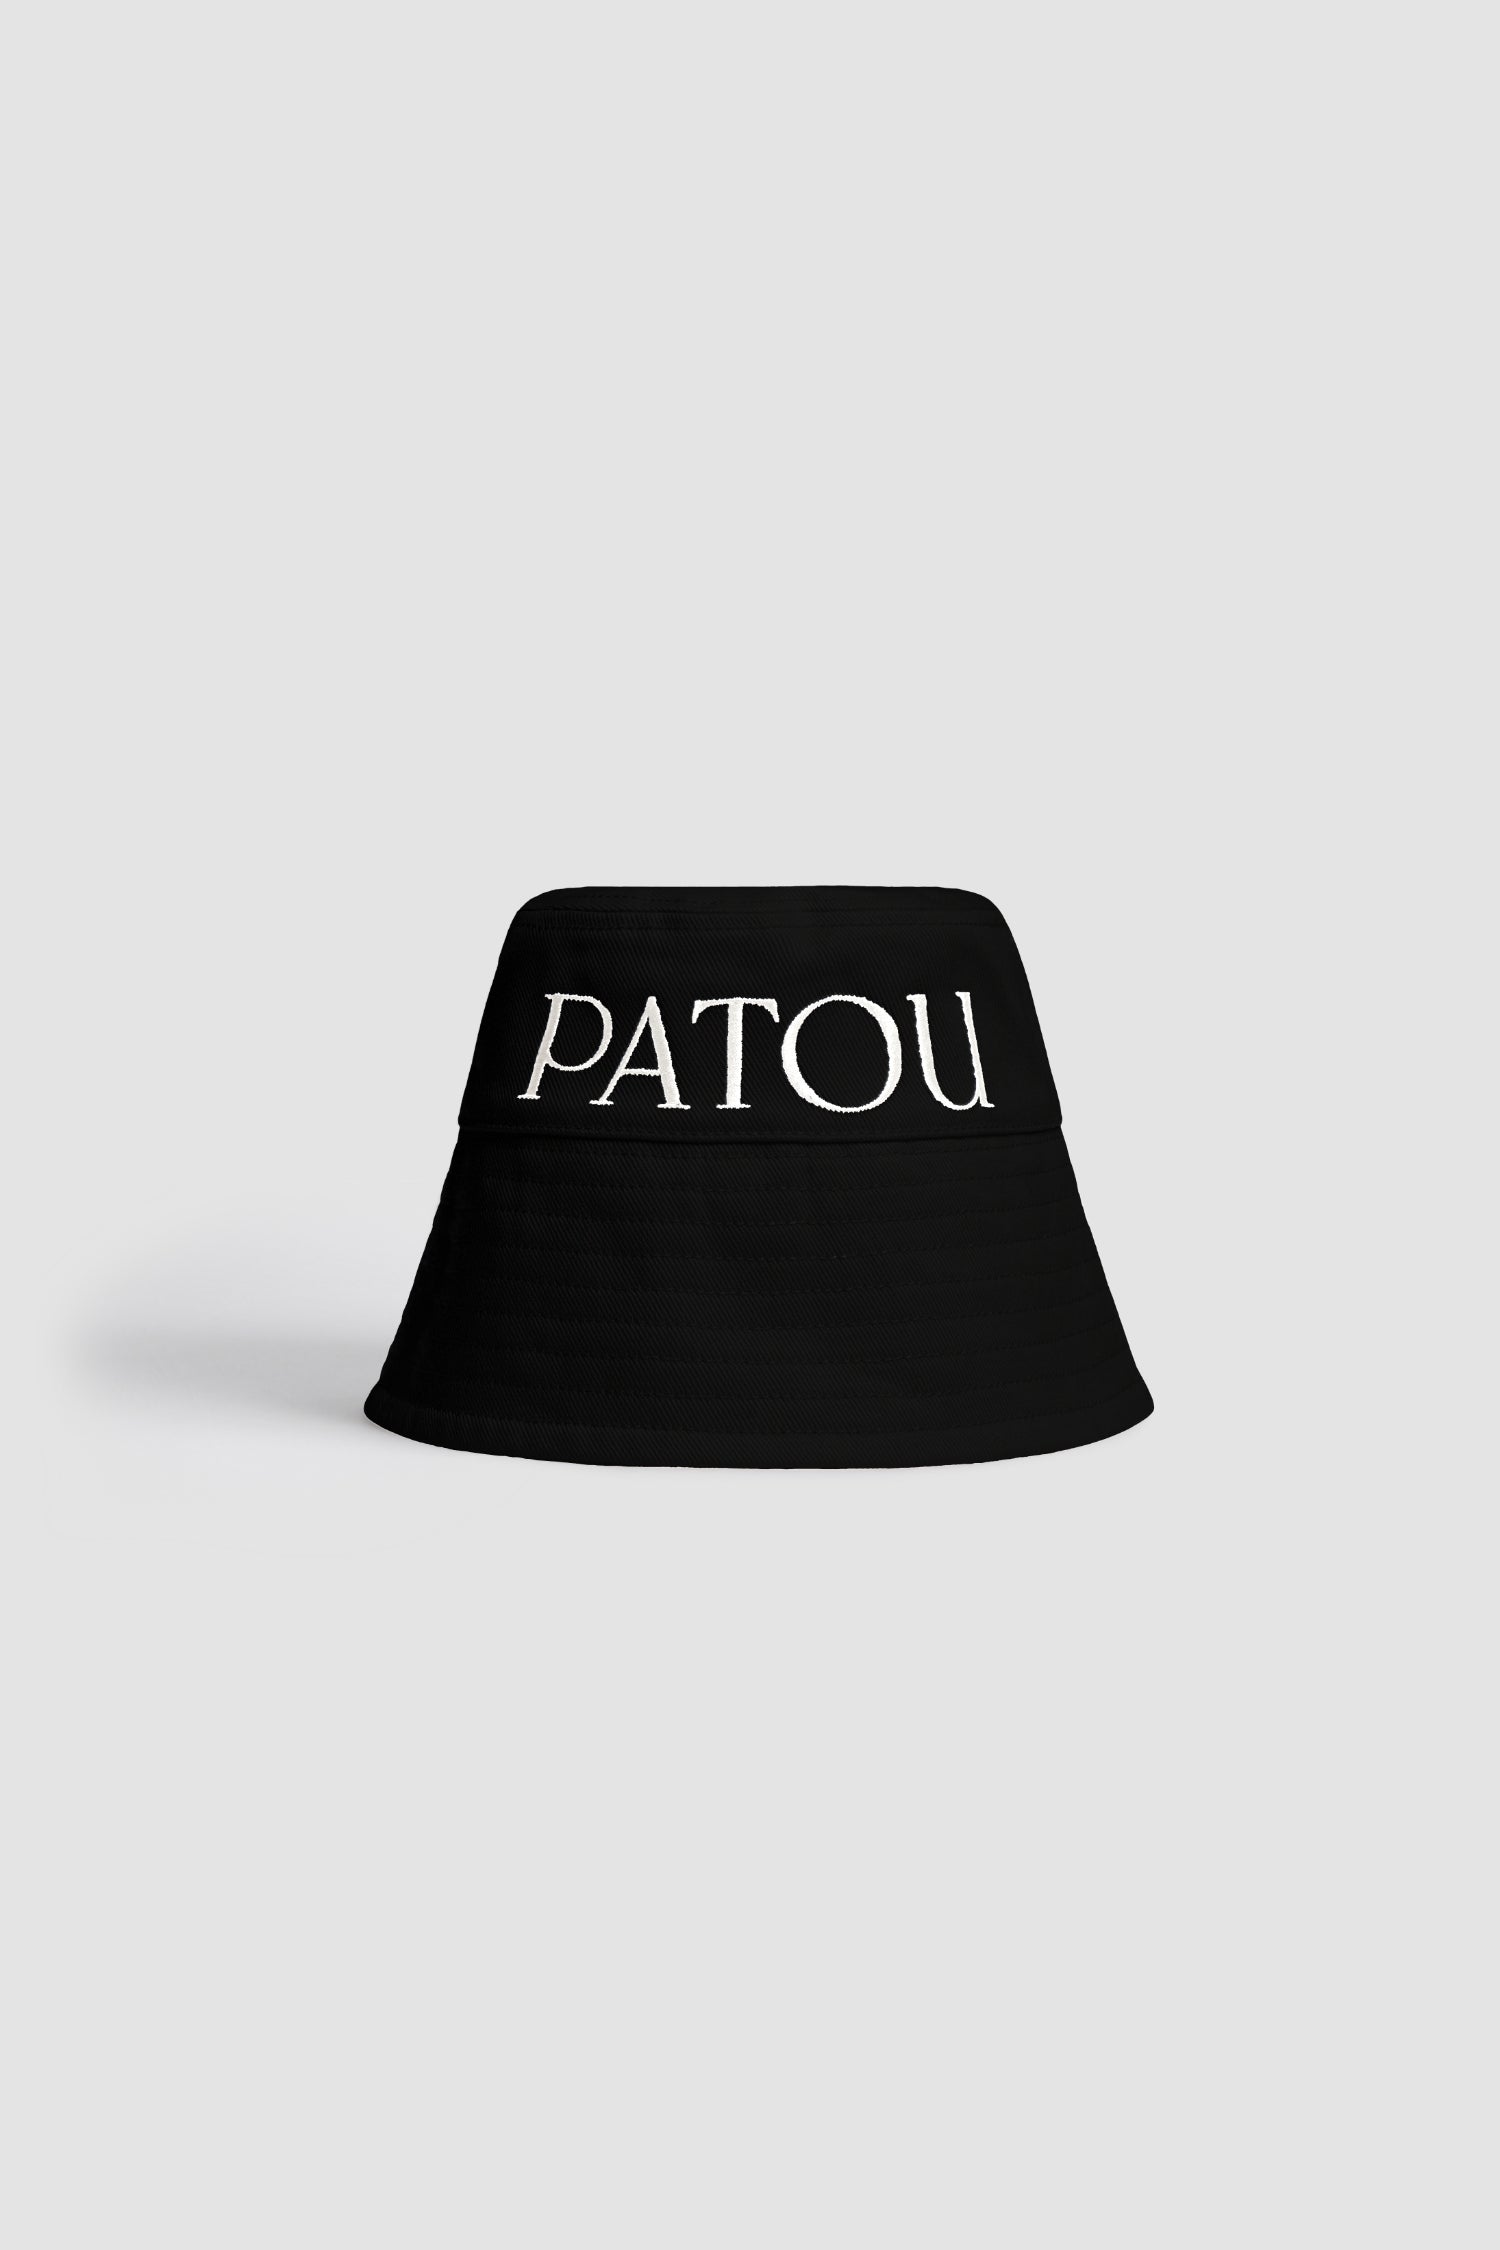 [新品未着用] Patou ロゴ バケットハット ホワイト M/L